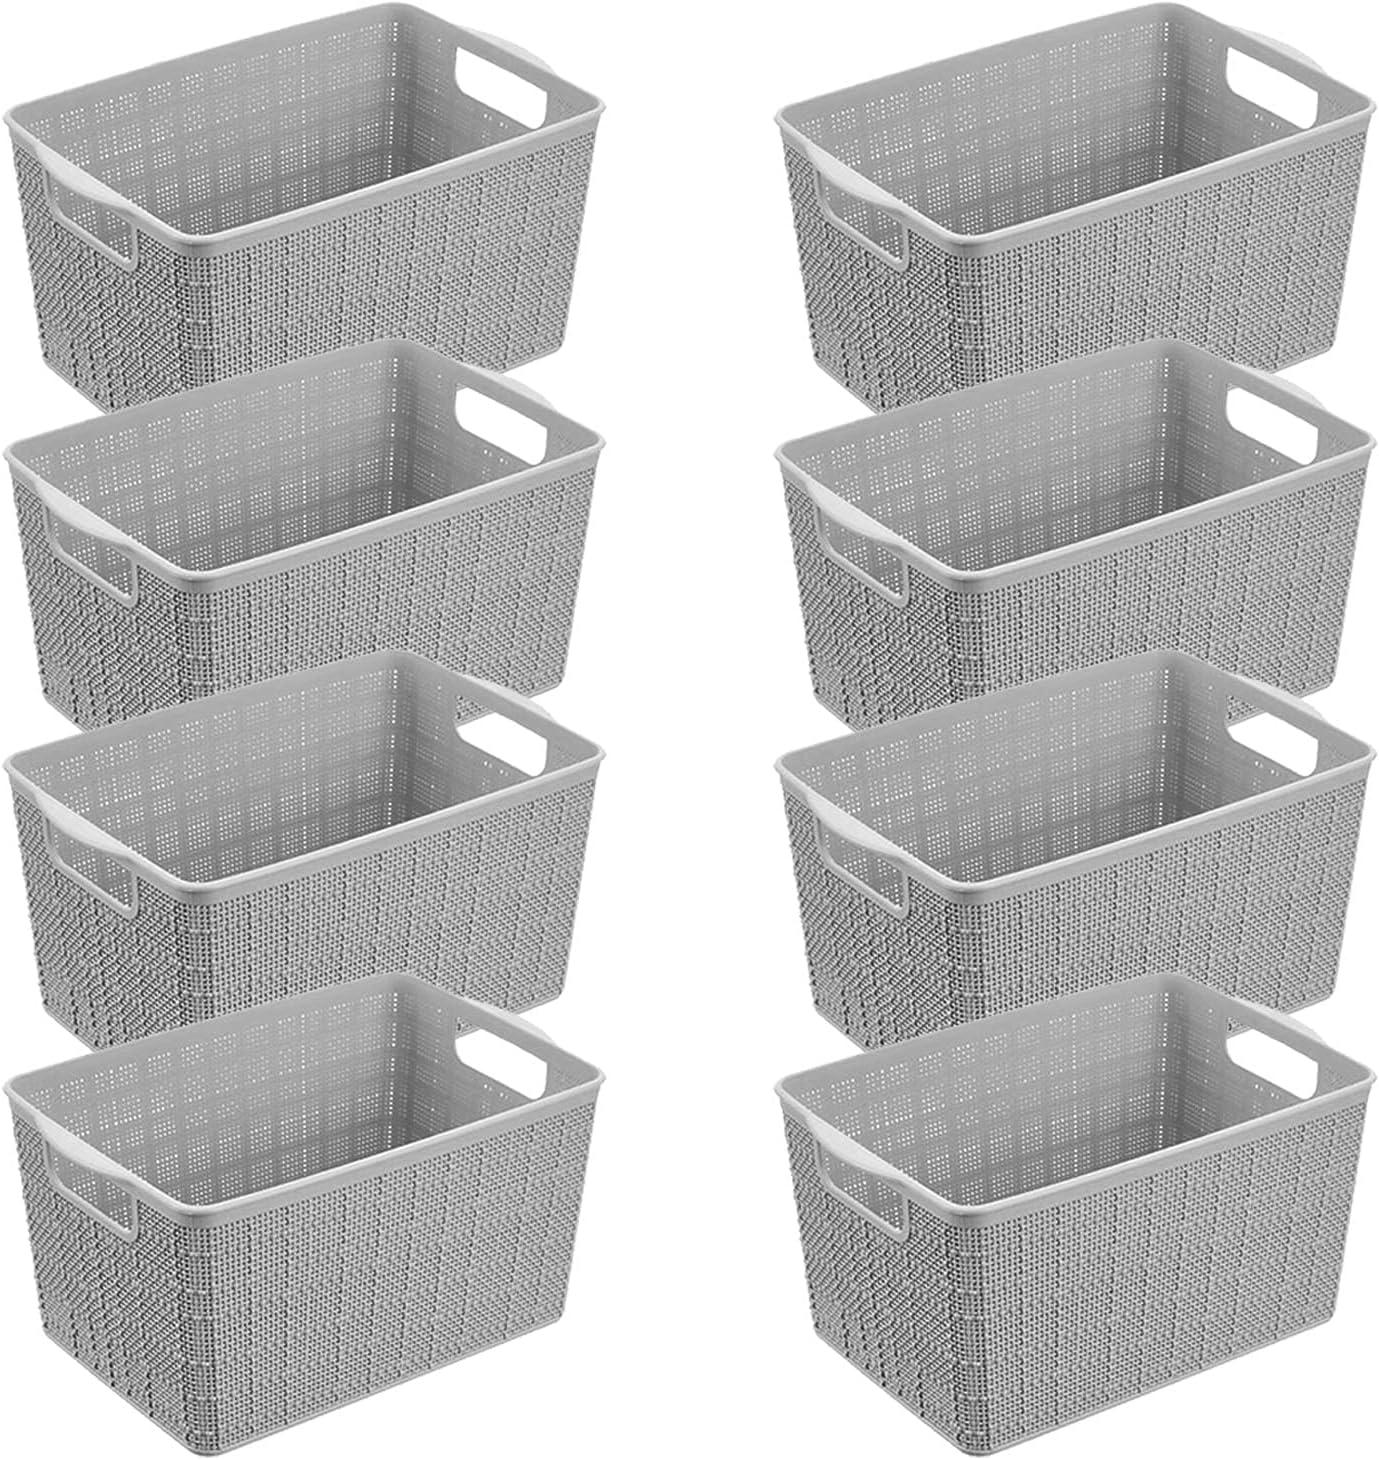 AYSUM 8 Paquete de cesta de almacenamiento de plástico, 9.7 x 6.5 x 5.5 pulgadas